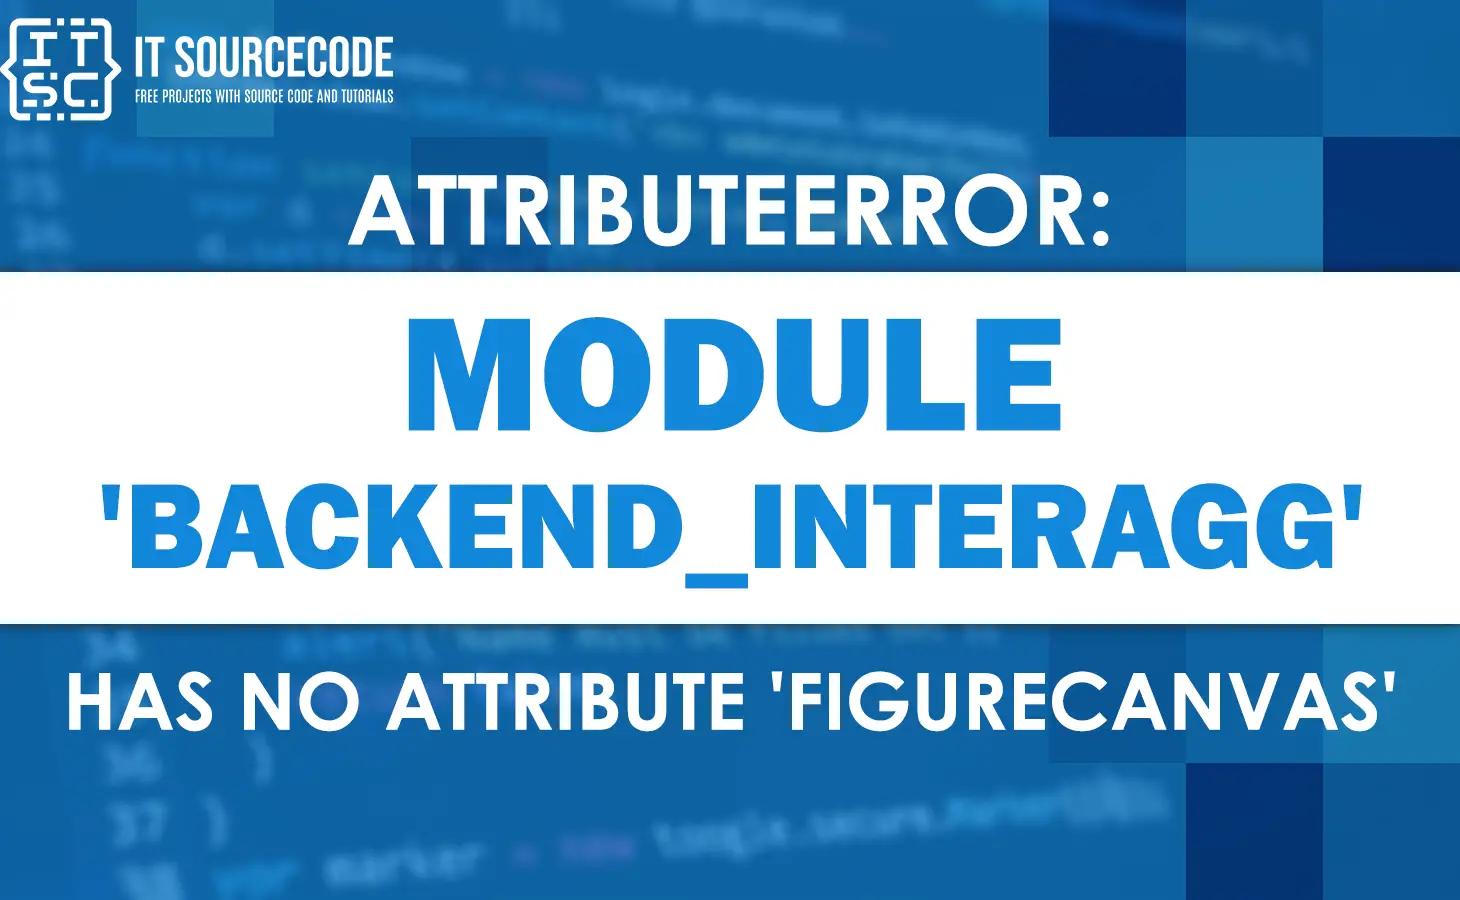 Attributeerror module 'backend_interagg' has no attribute 'figurecanvas'